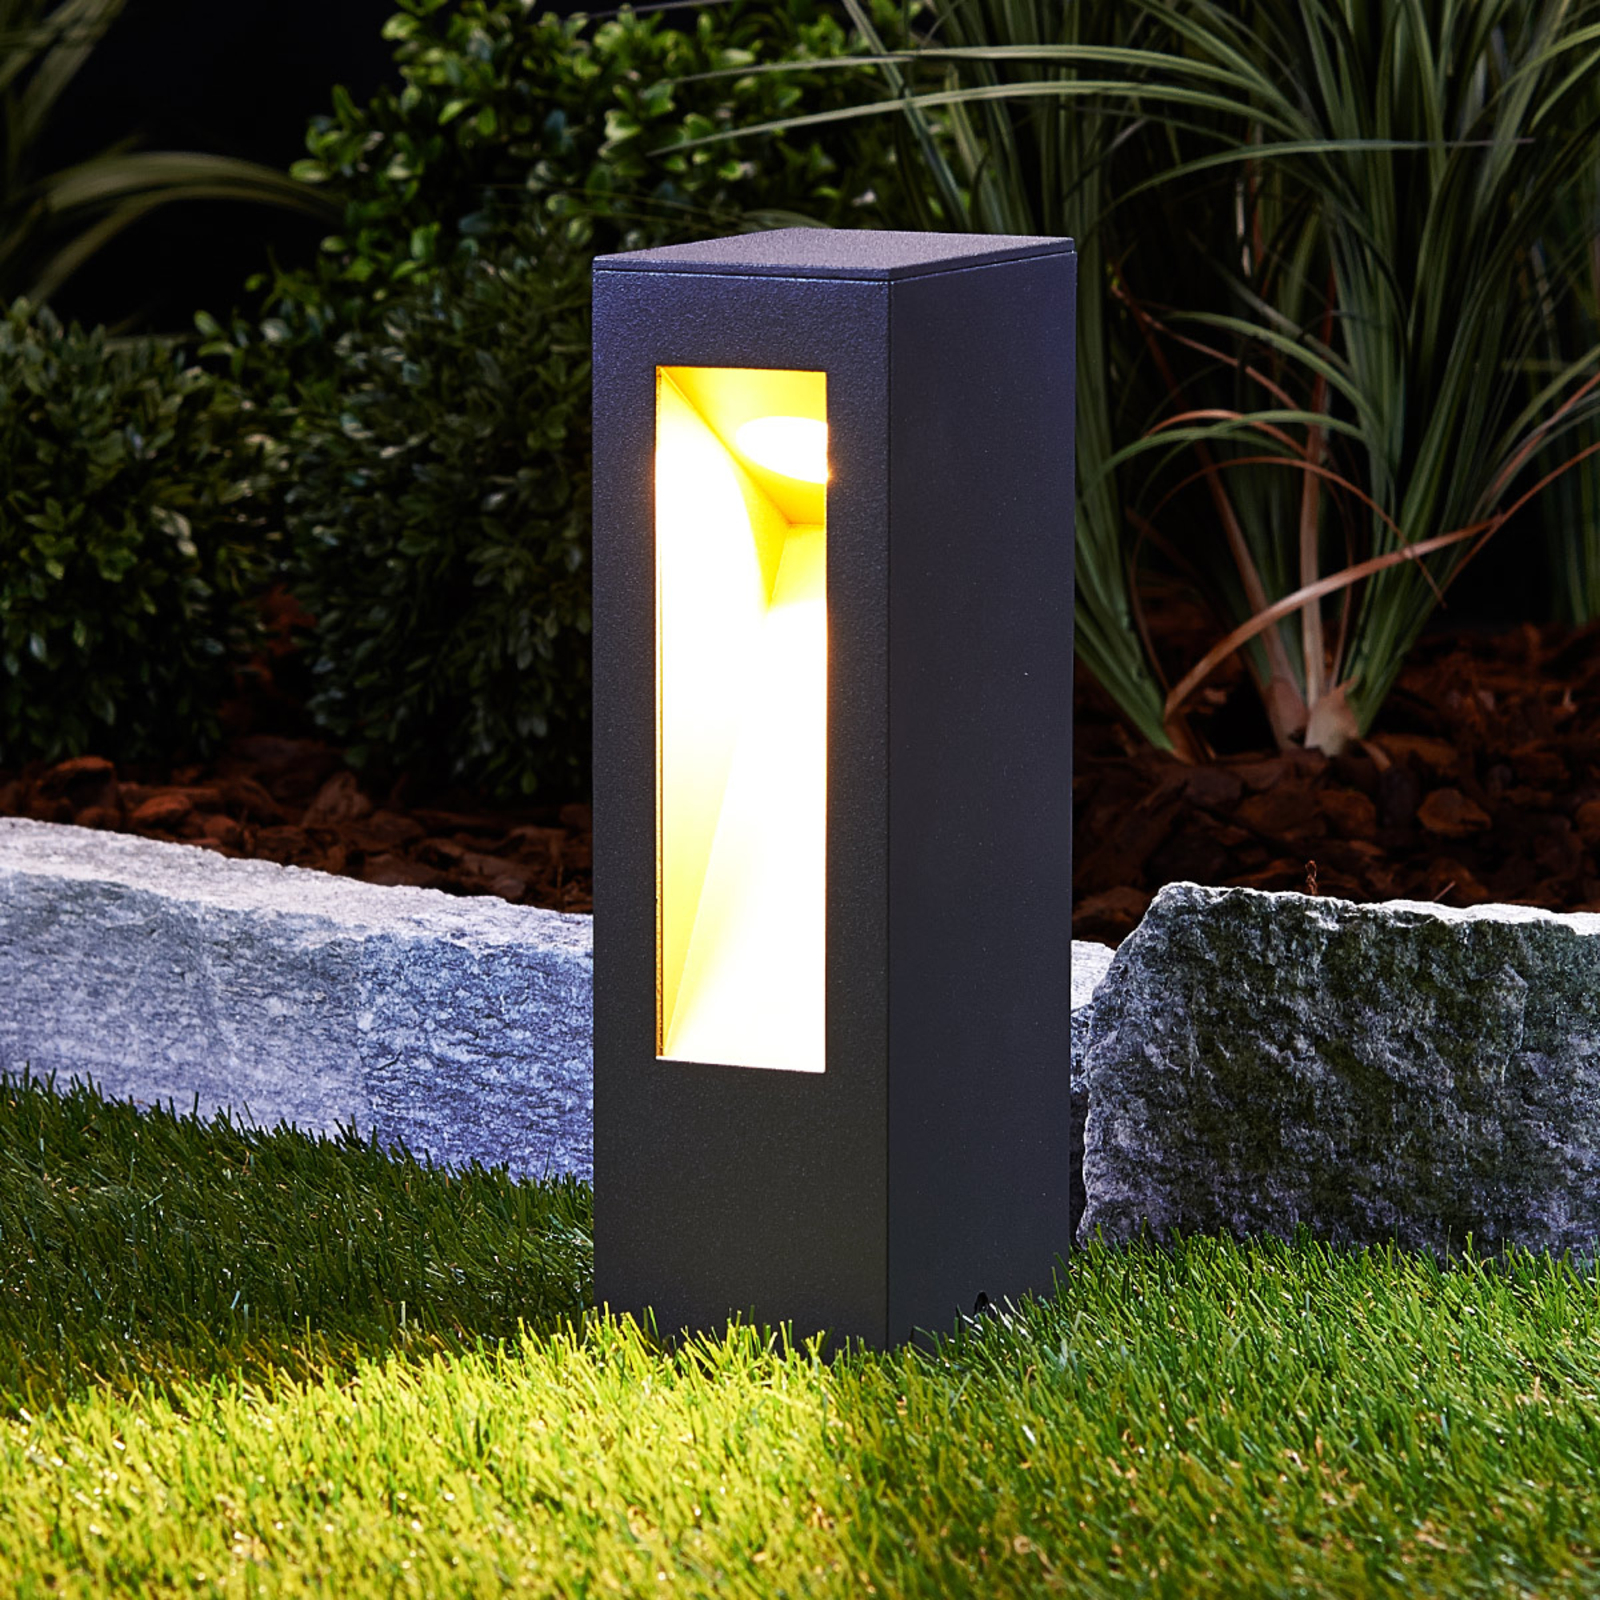 Jenke LED pillar light made of aluminium